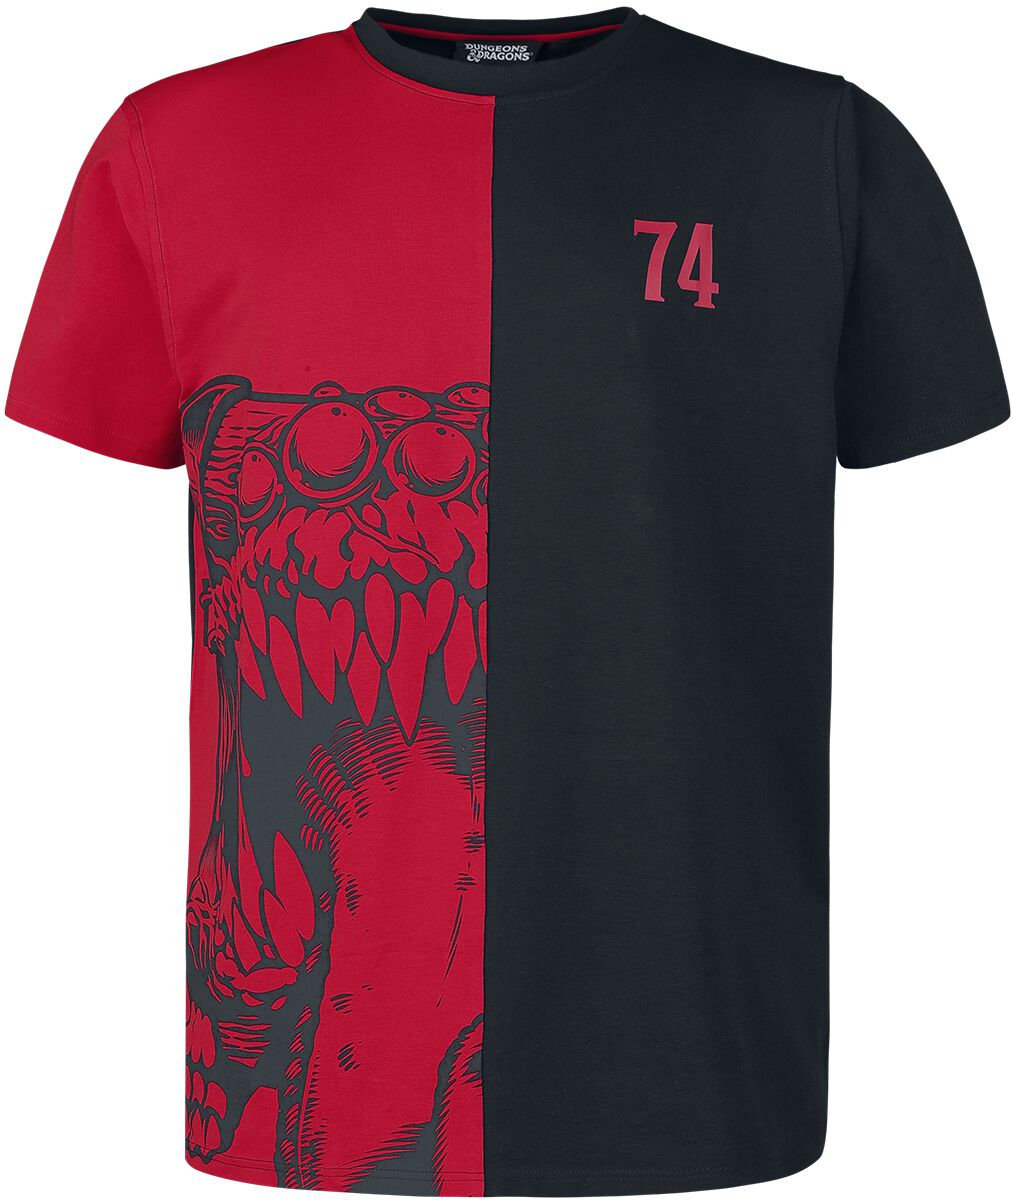 Dungeons and Dragons - Gaming T-Shirt - Mimic - S bis M - für Männer - Größe M - schwarz/rot  - EMP exklusives Merchandise!